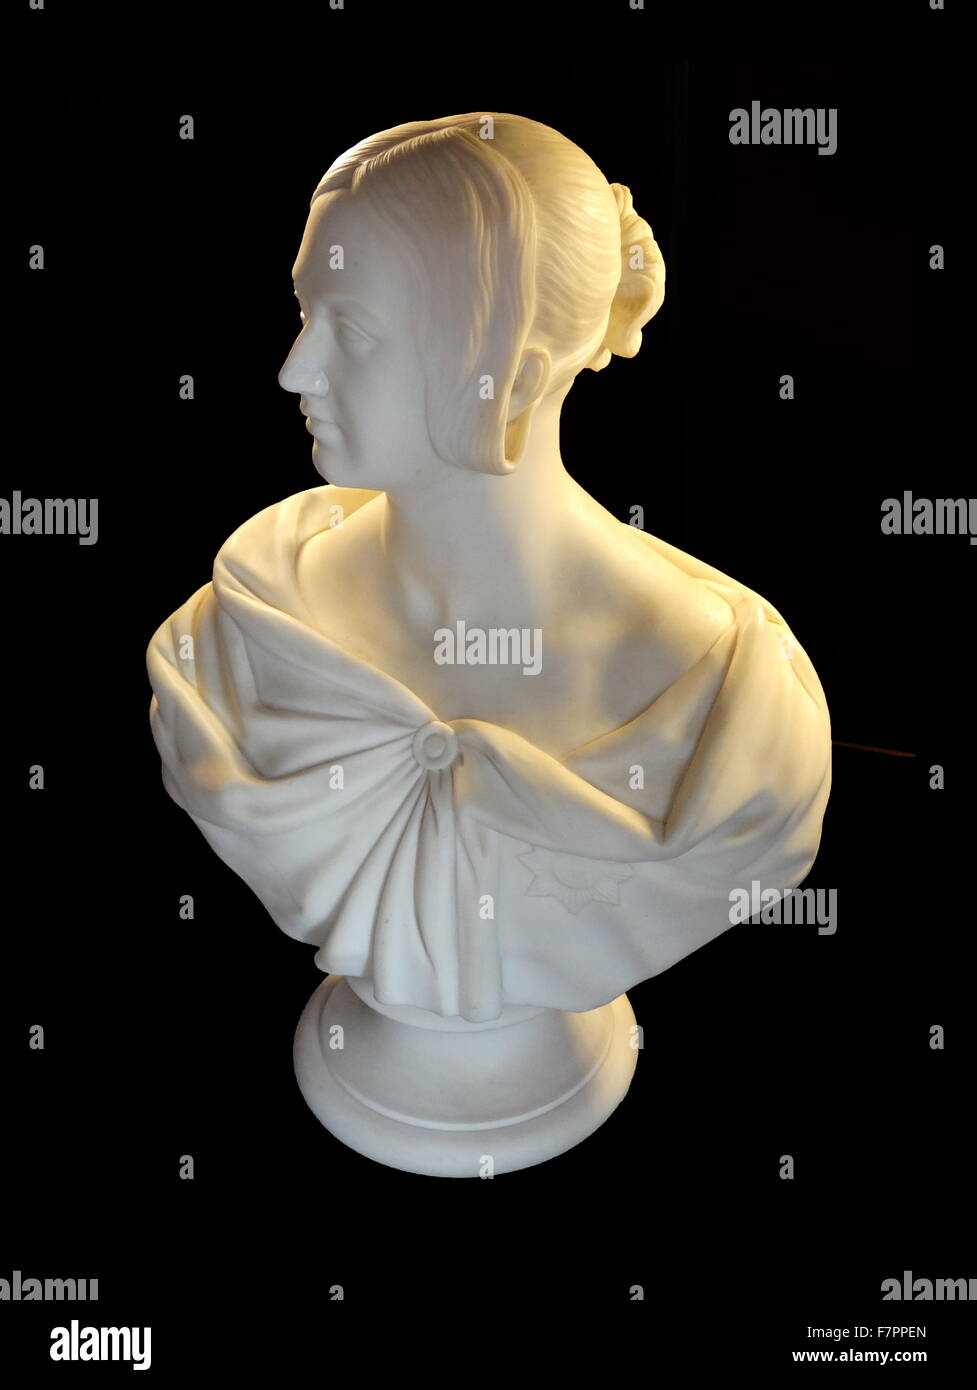 Büste der Königin Victoria Alter 29 (1819-1901) Königin des Vereinigten Königreichs von Großbritannien und Irland. Datiert 1838 Stockfoto